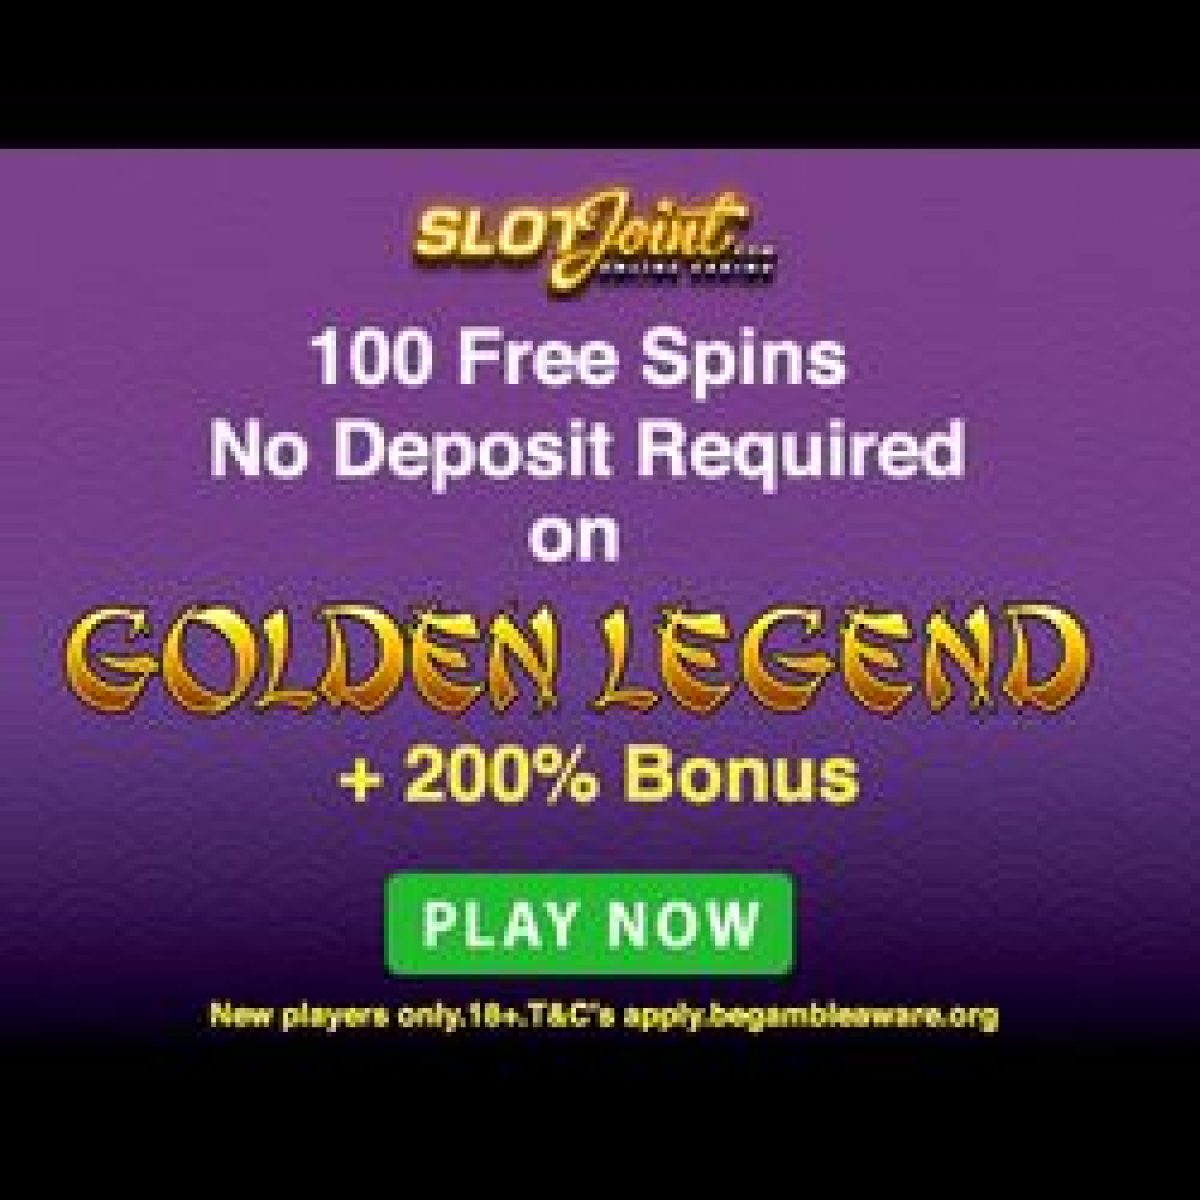 Slot joint bonus codes